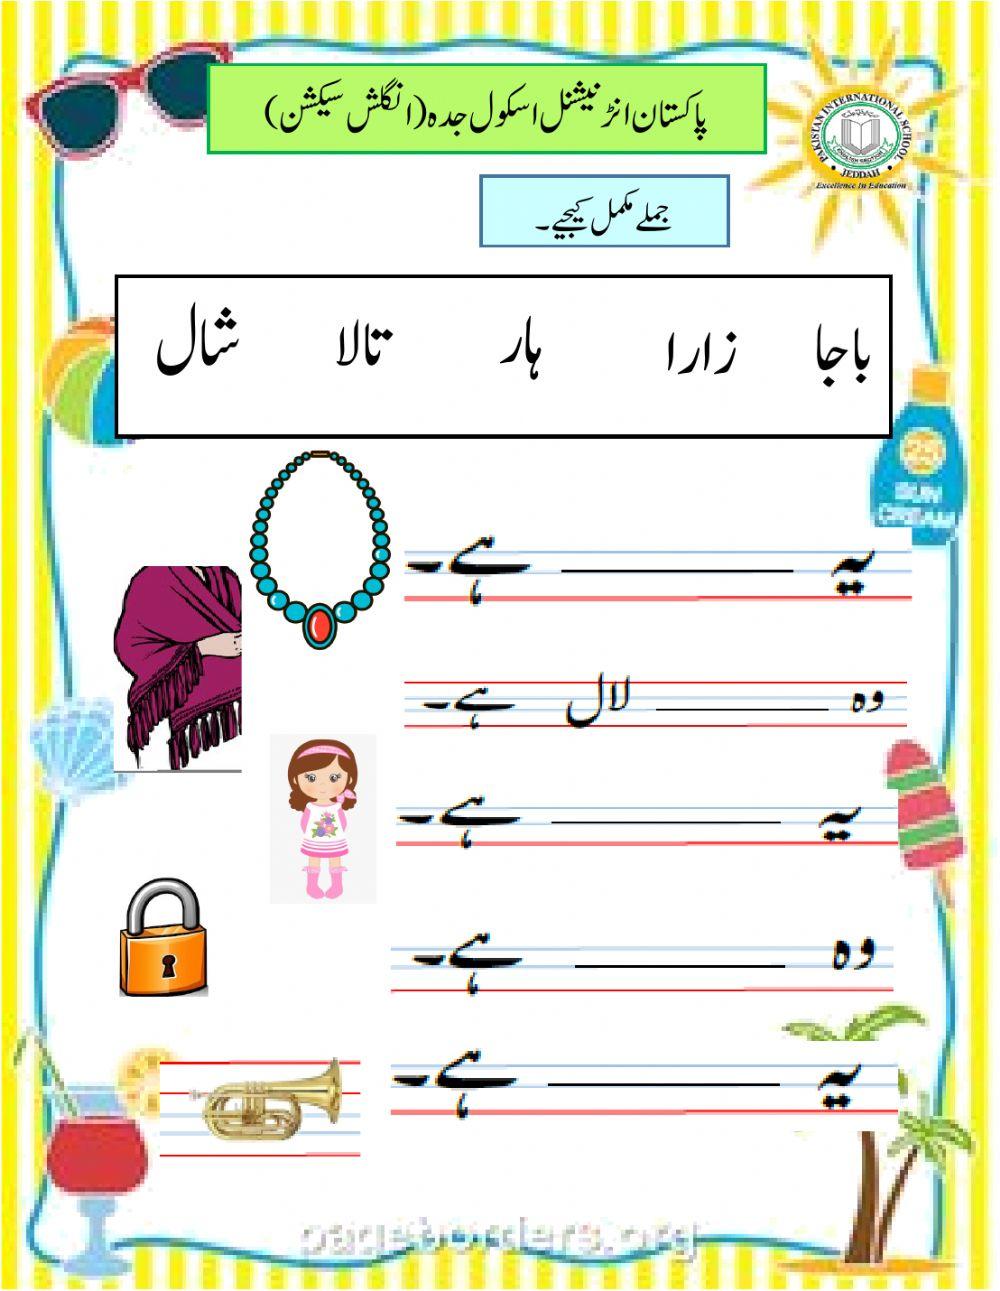 Urdu worksheet for YR